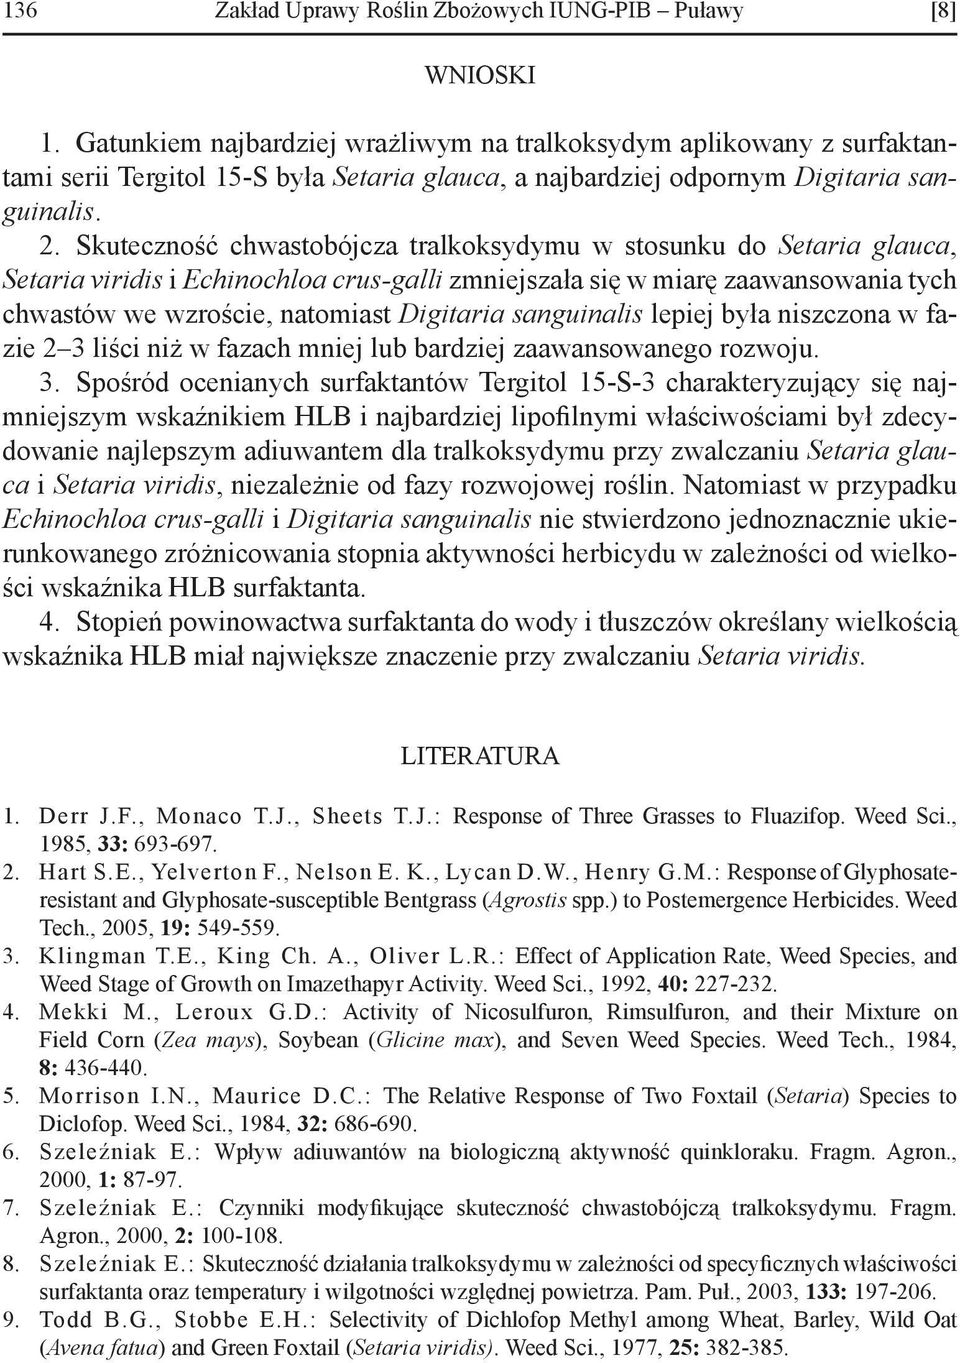 Skuteczność chwastobójcza tralkoksydymu w stosunku do Setaria glauca, Setaria viridis i Echinochloa crus-galli zmniejszała się w miarę zaawansowania tych chwastów we wzroście, natomiast Digitaria